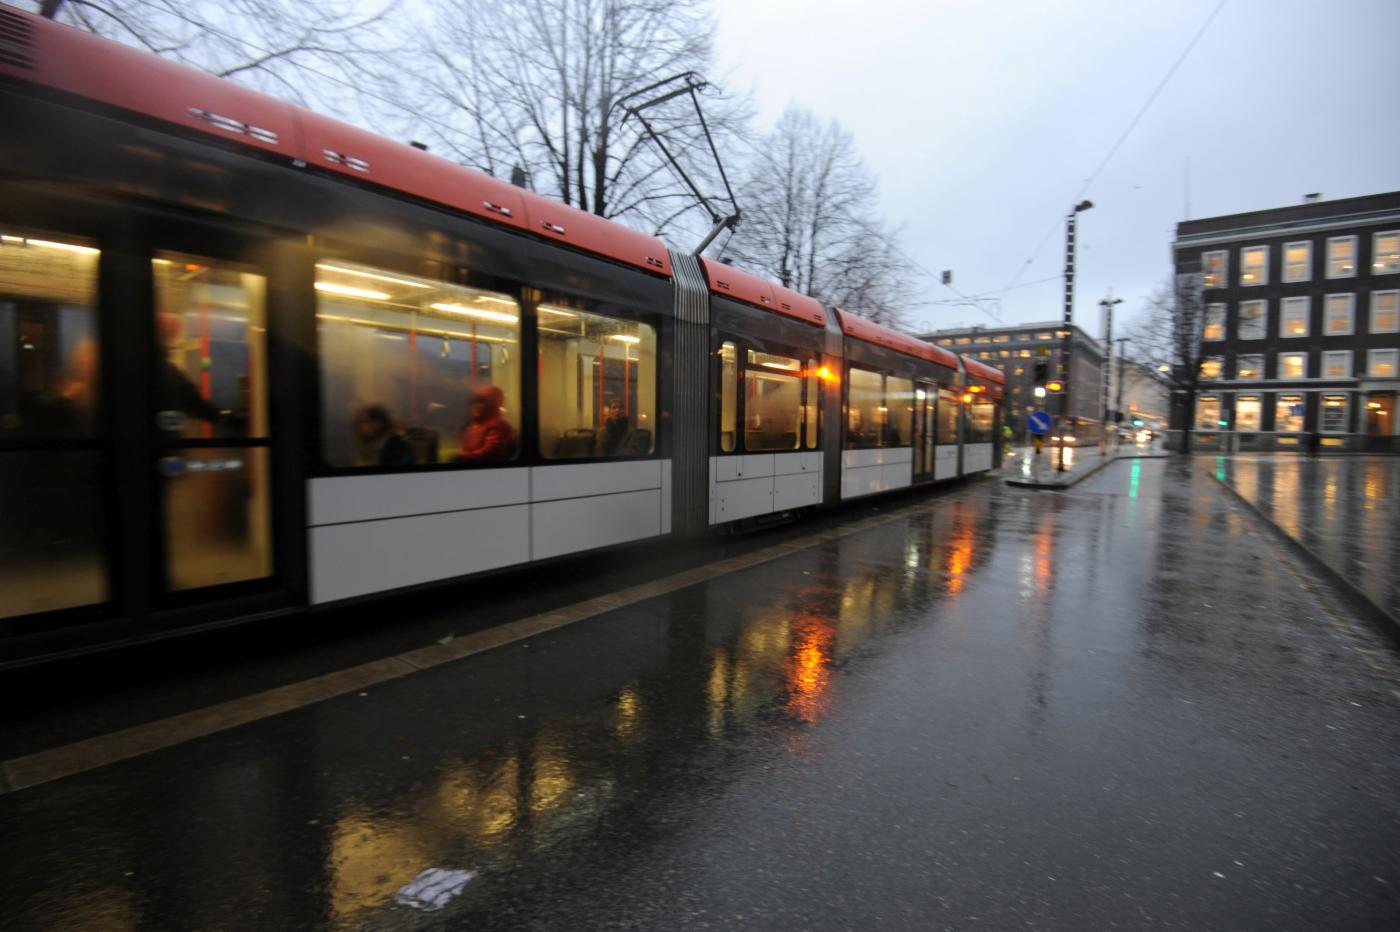 The City Rain in the city centre